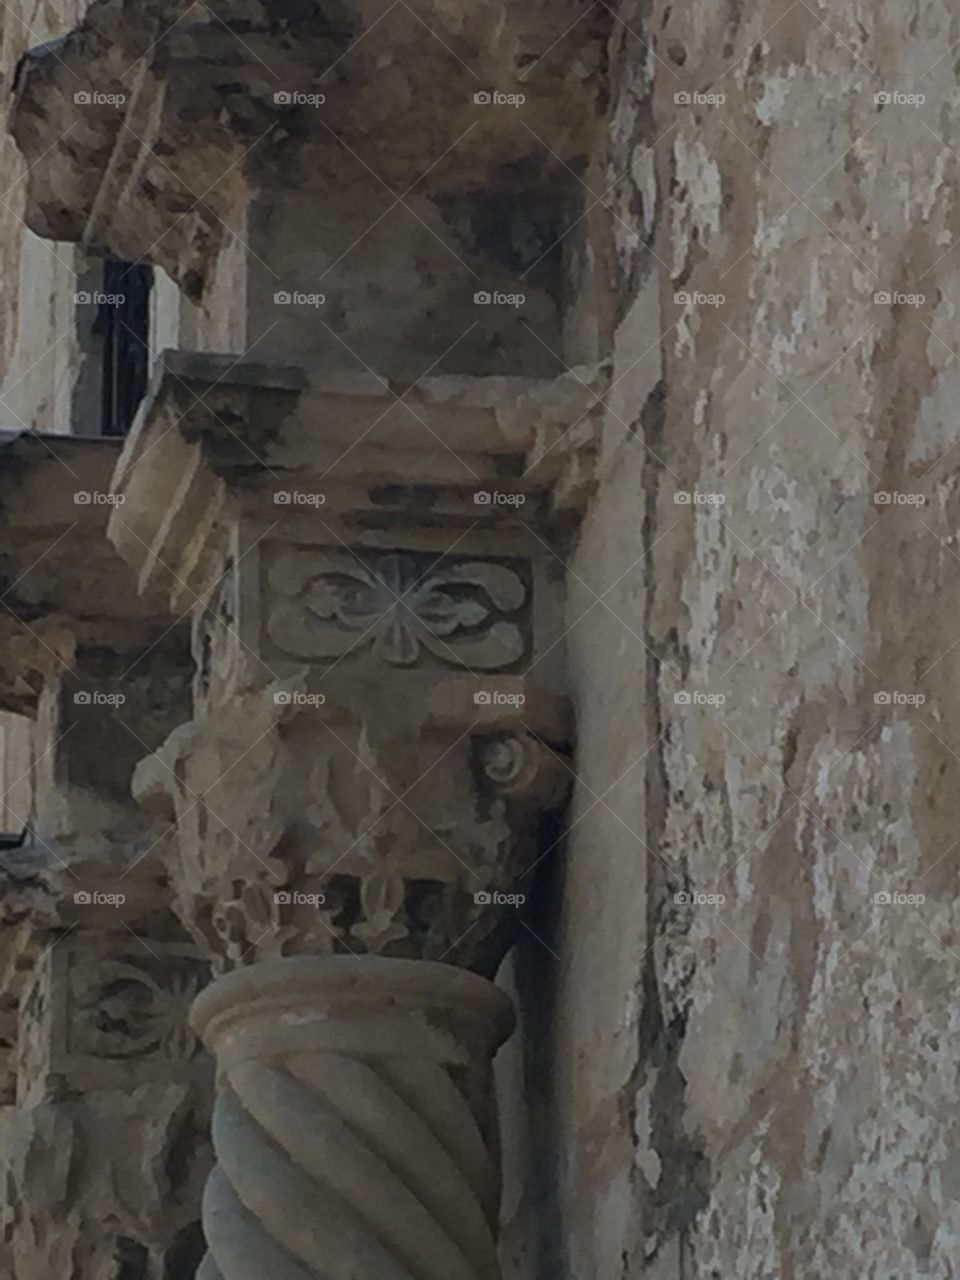 Column detail at the Alamo